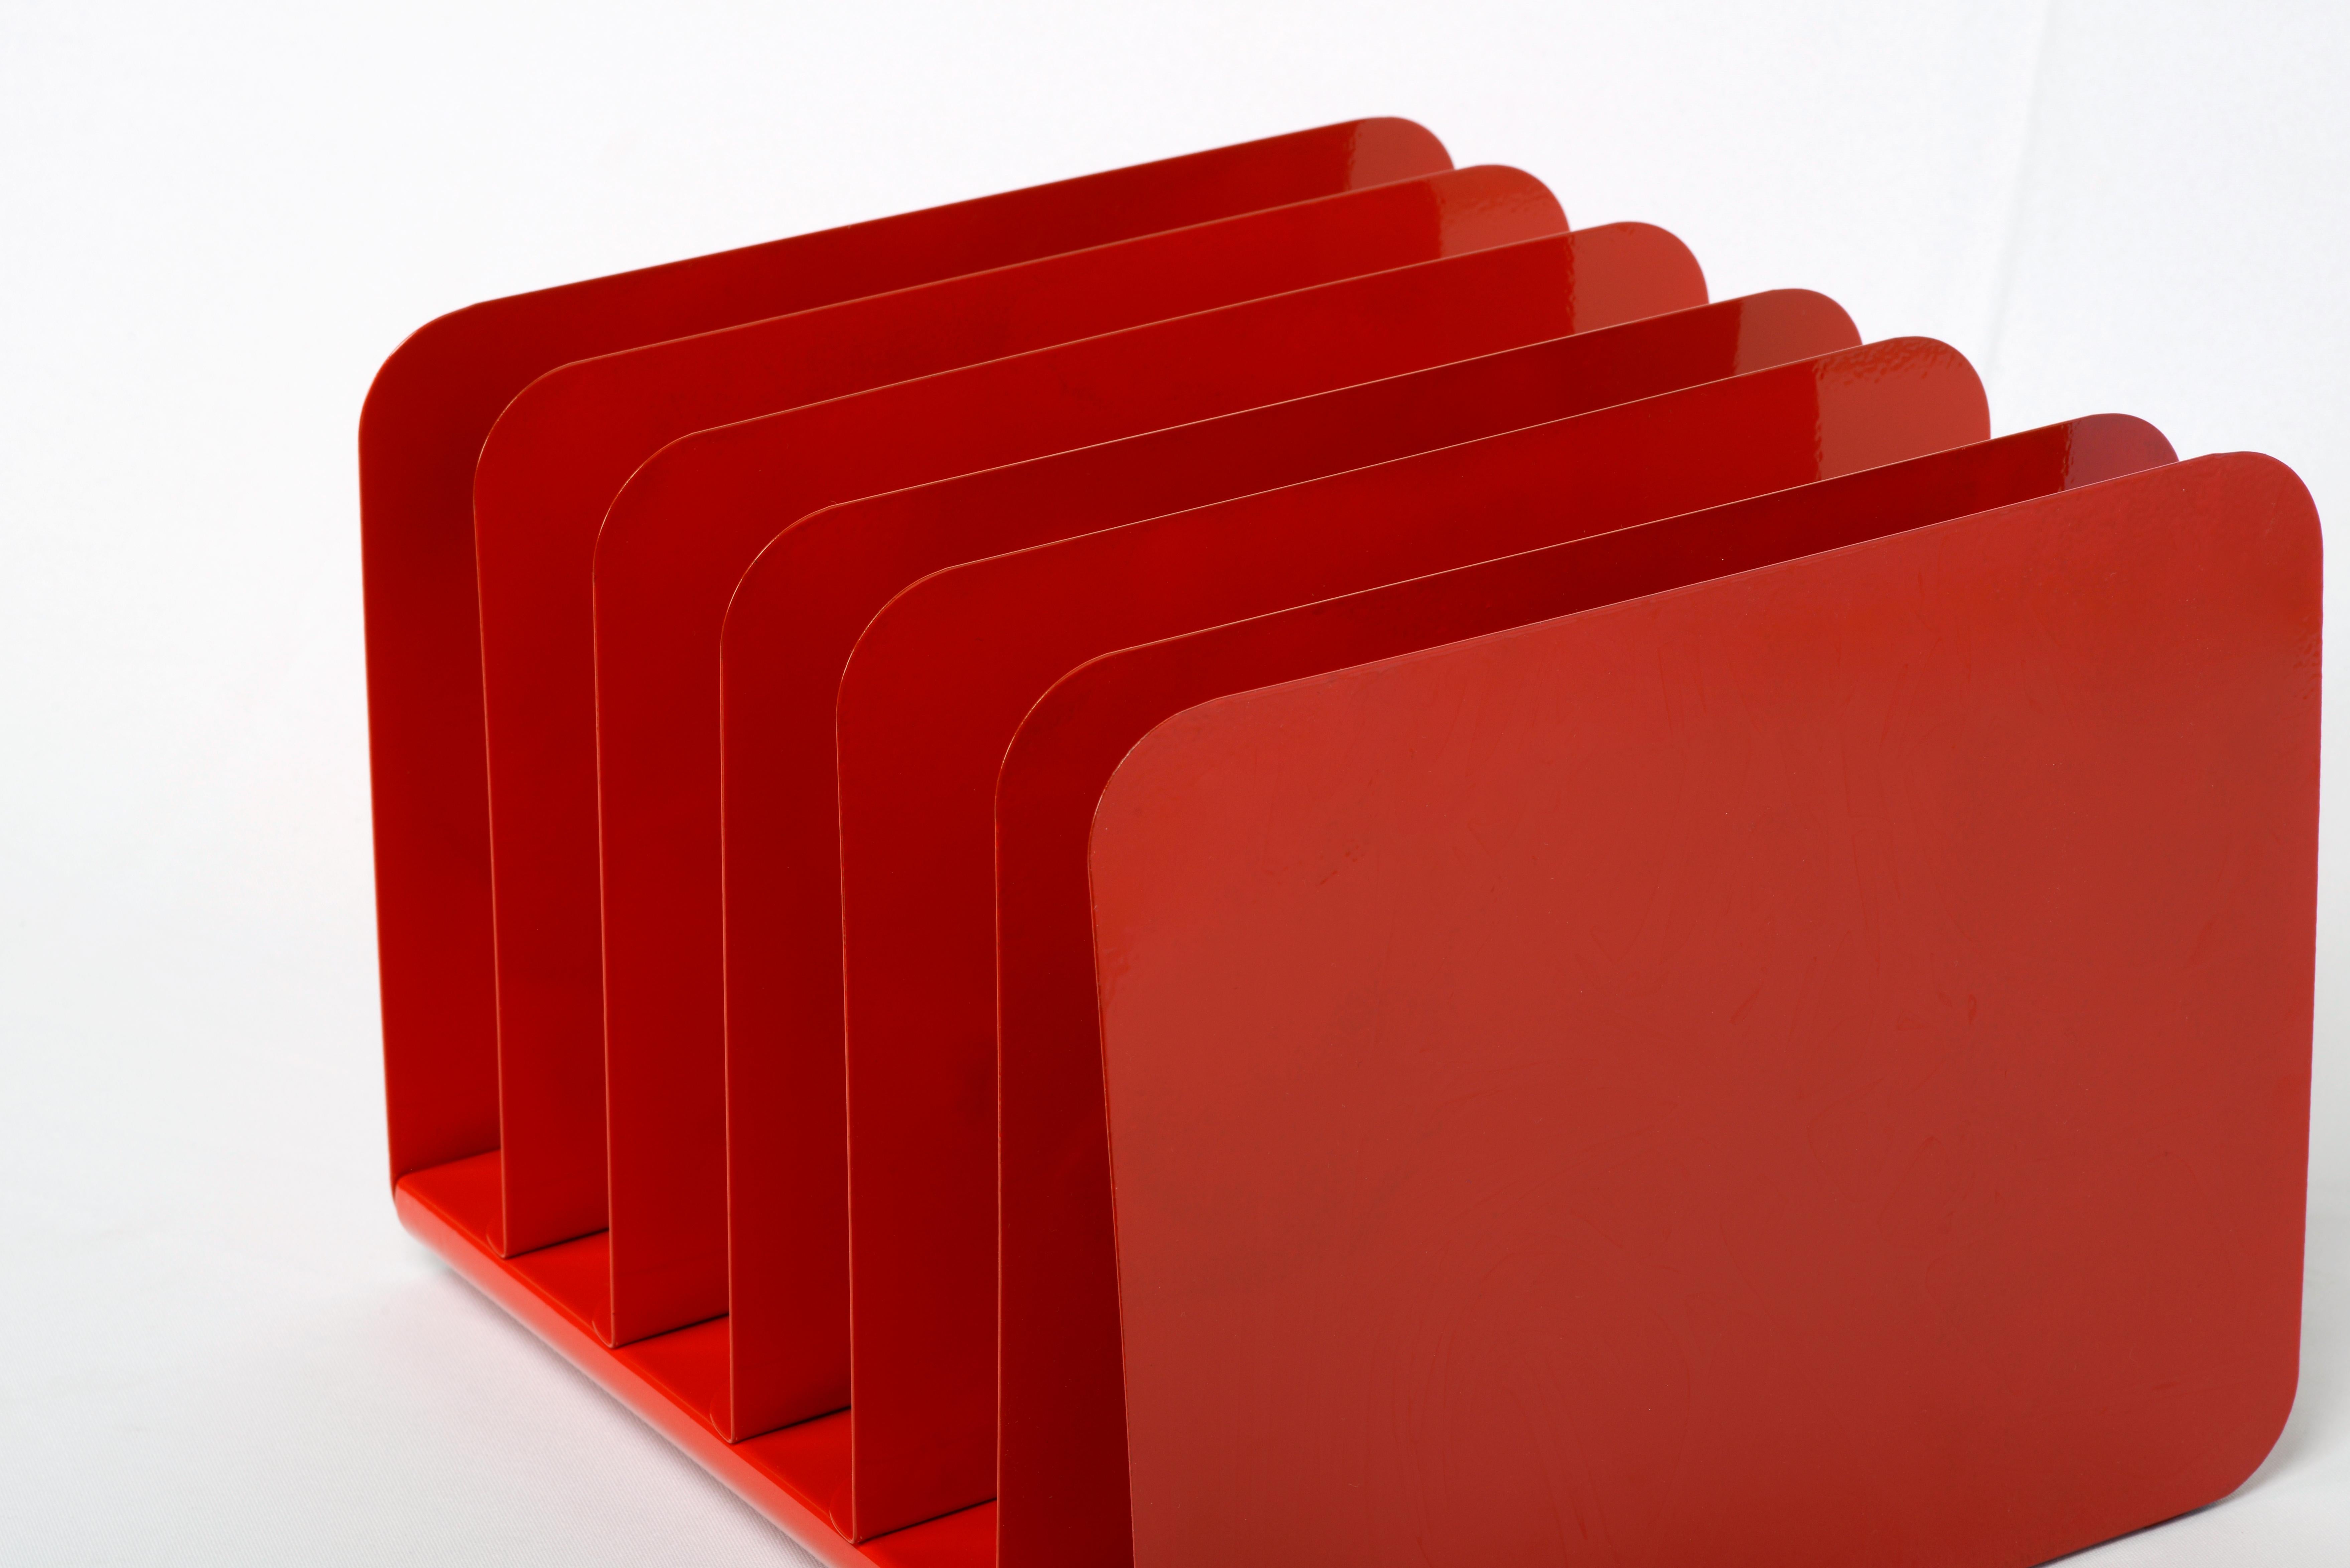 1960s Desktop File Organizer, Refinished in Red (Pulverbeschichtet)